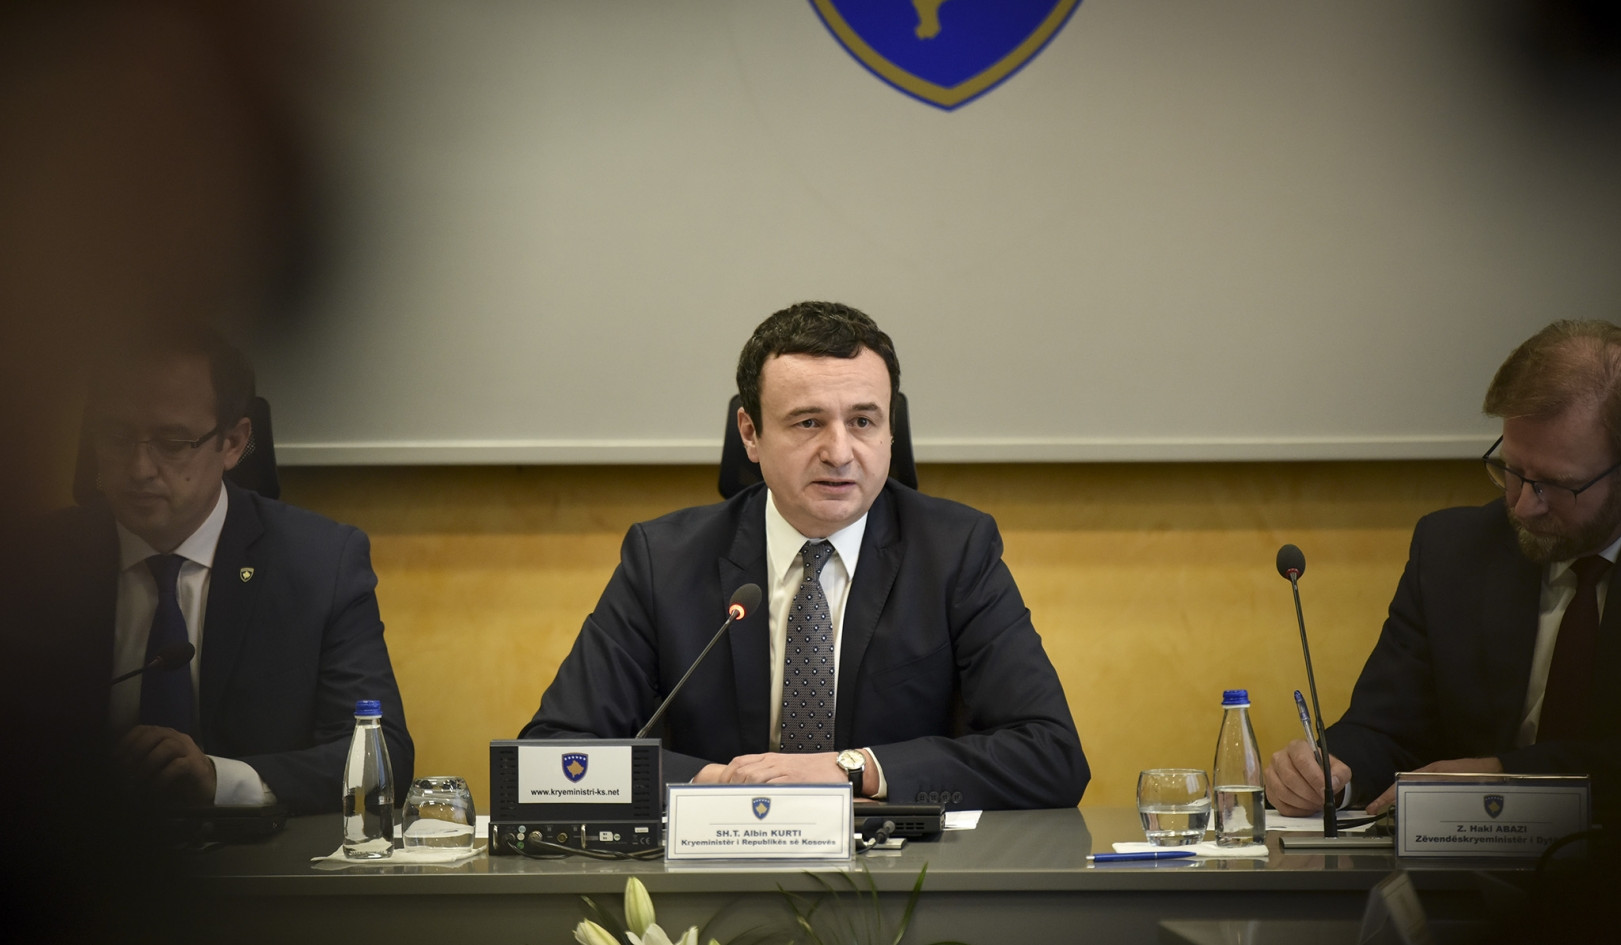 Косово намерено вступить в НАТО и Евросоюз